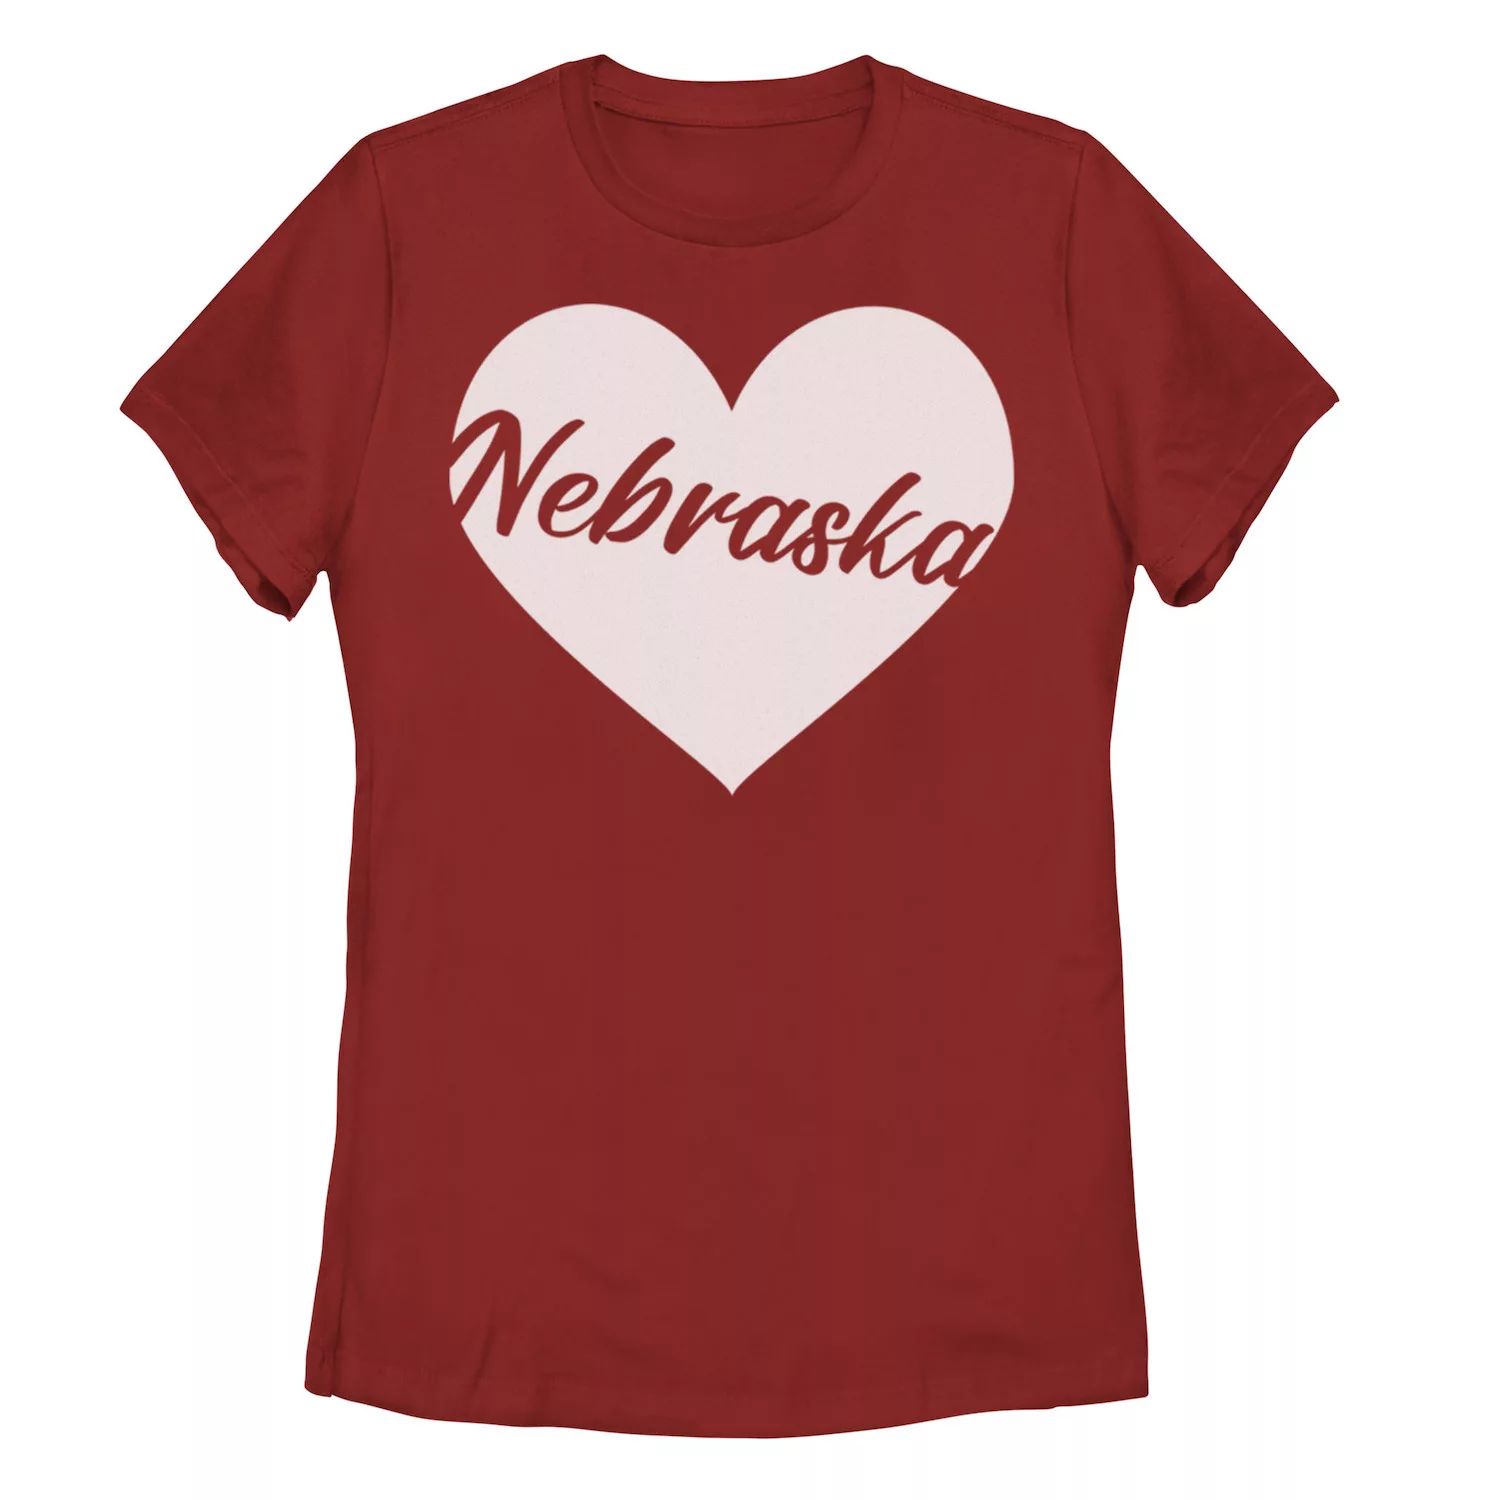 Детская футболка с рисунком «Небраска» и вырезом в форме сердца детская футболка цветочный орнамент в форме сердца любовь 164 синий